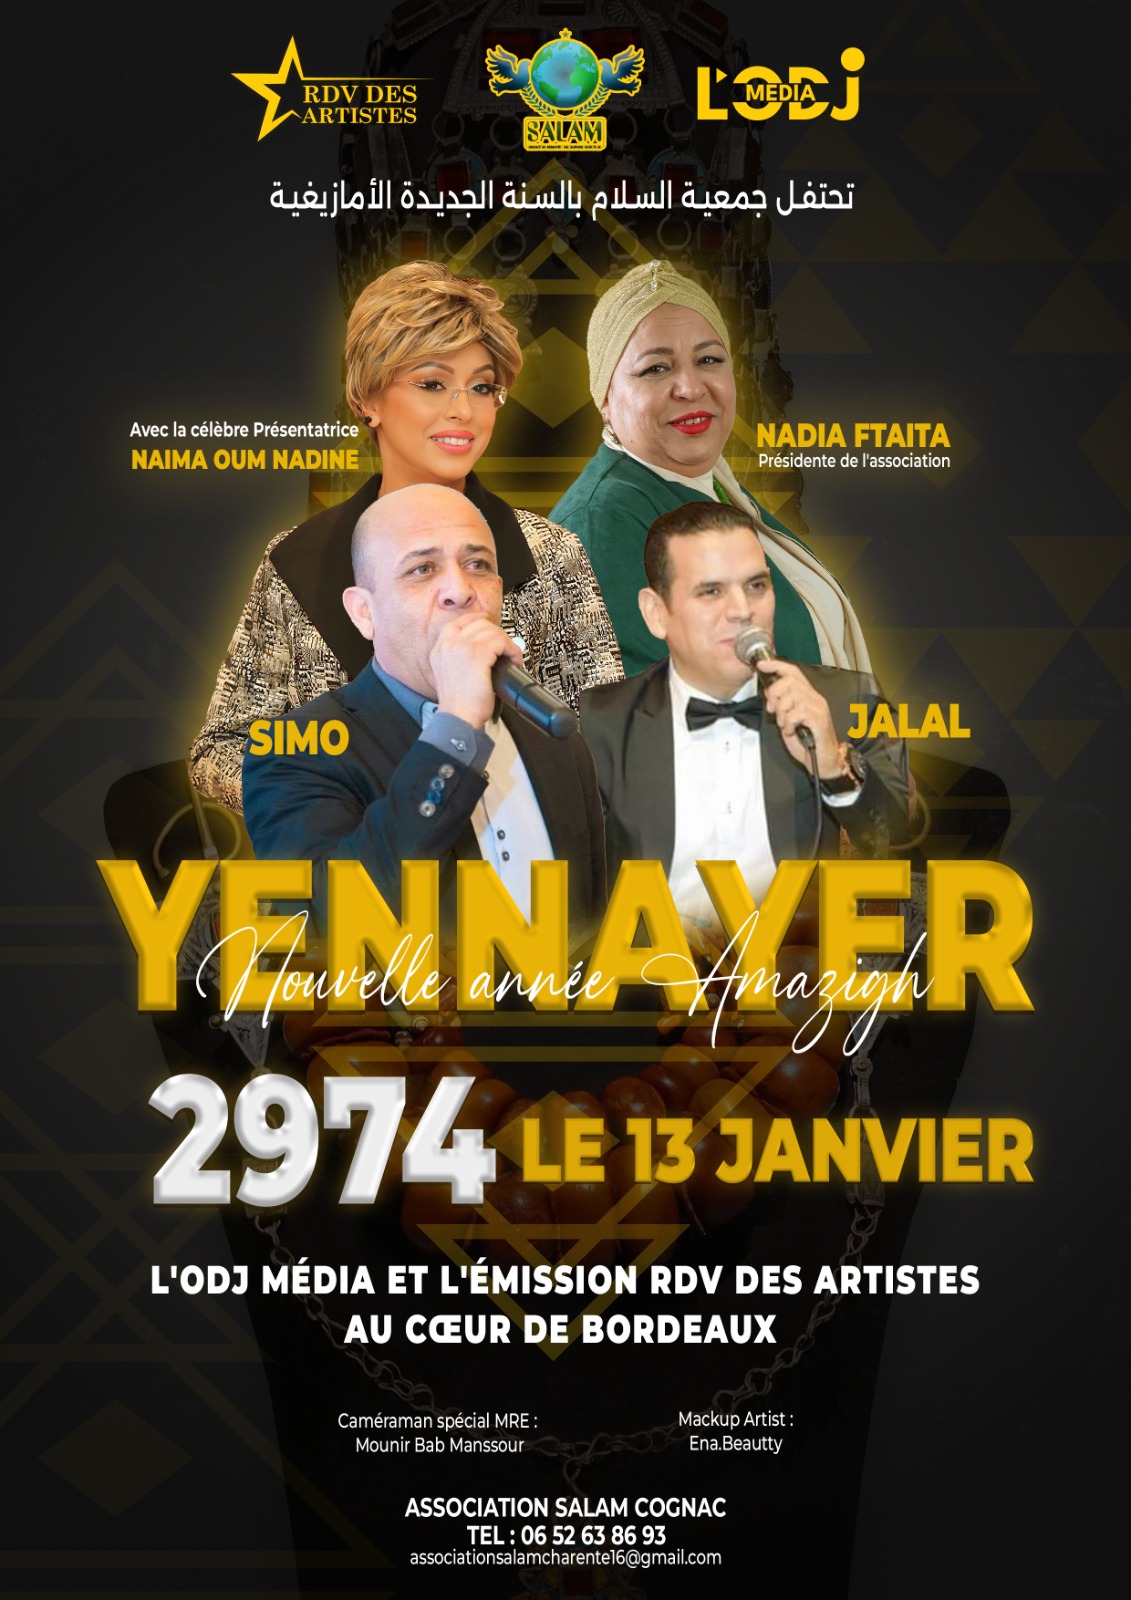 L'émission RDV des artistes se délocalise en France pour Yennayer 2974 le Nouvel An Amazigh